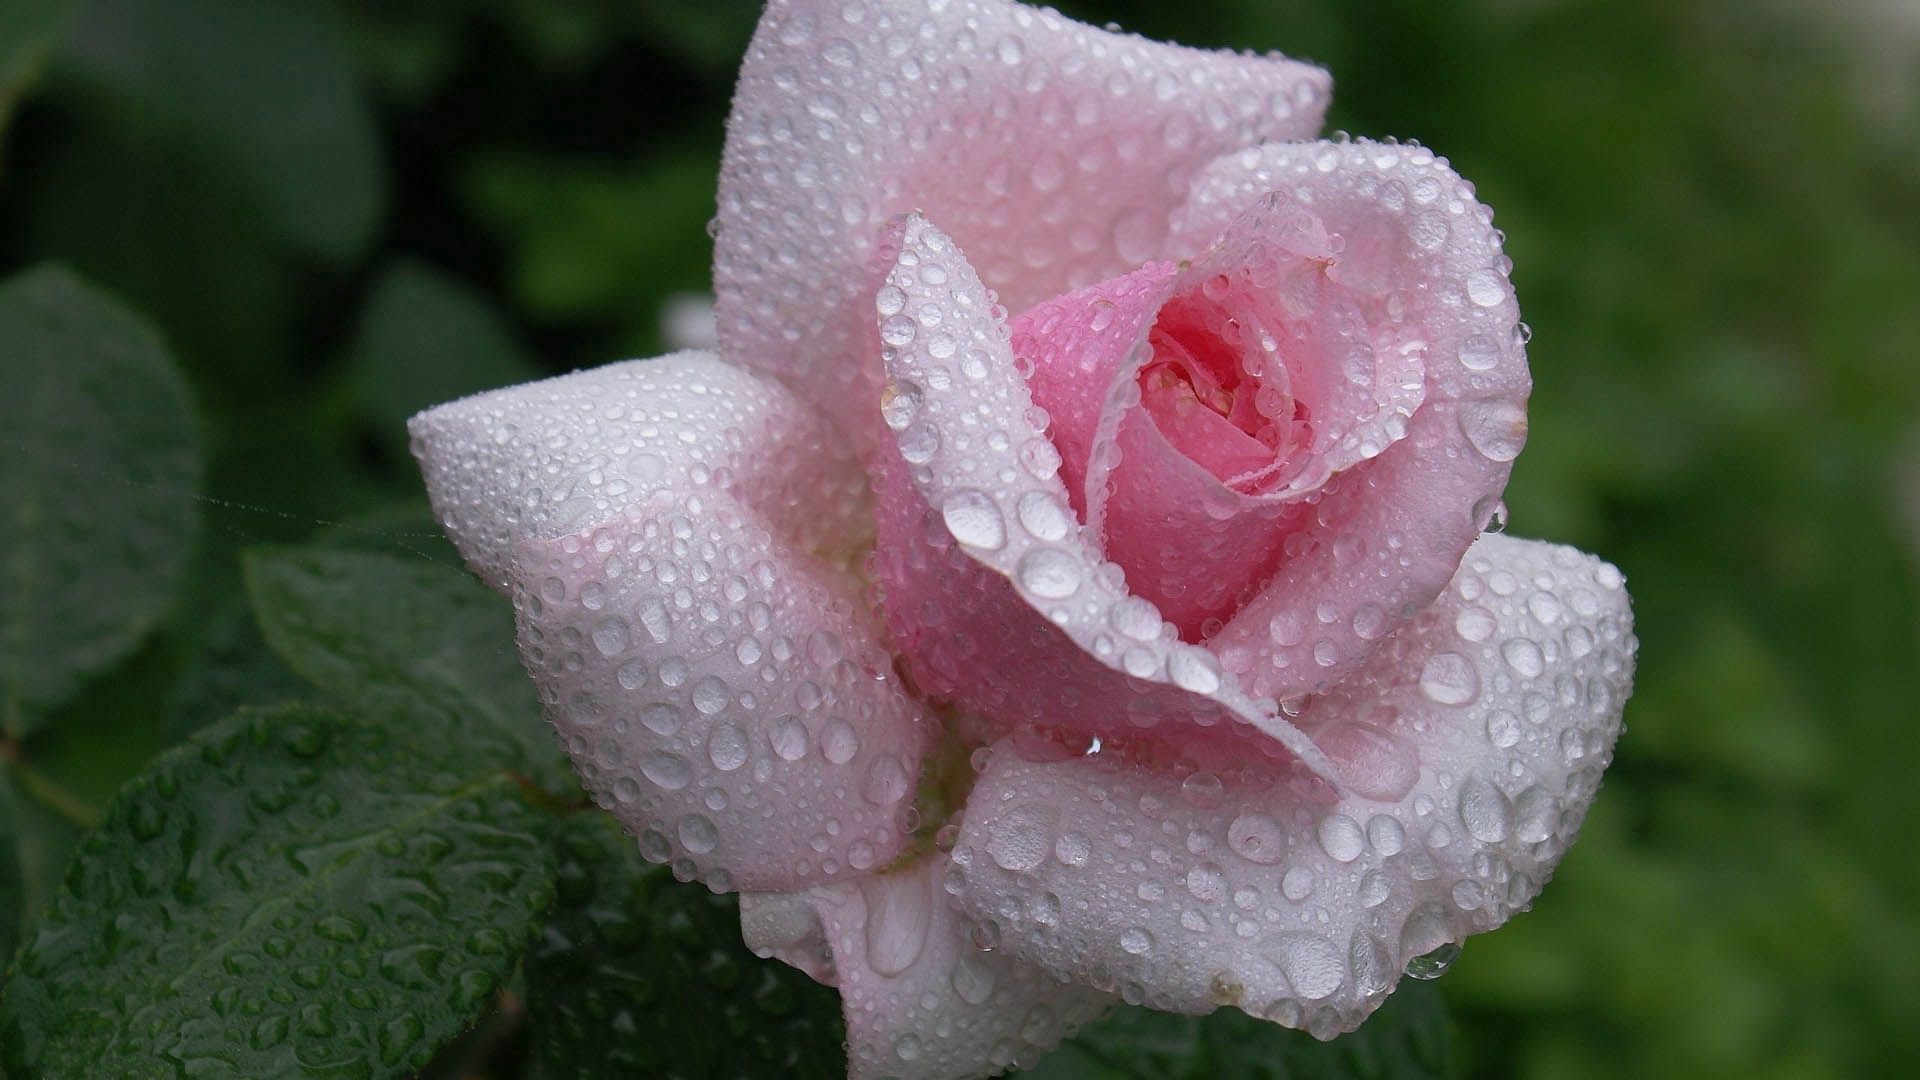 dew, drops, macro, rose flower, rose, petals